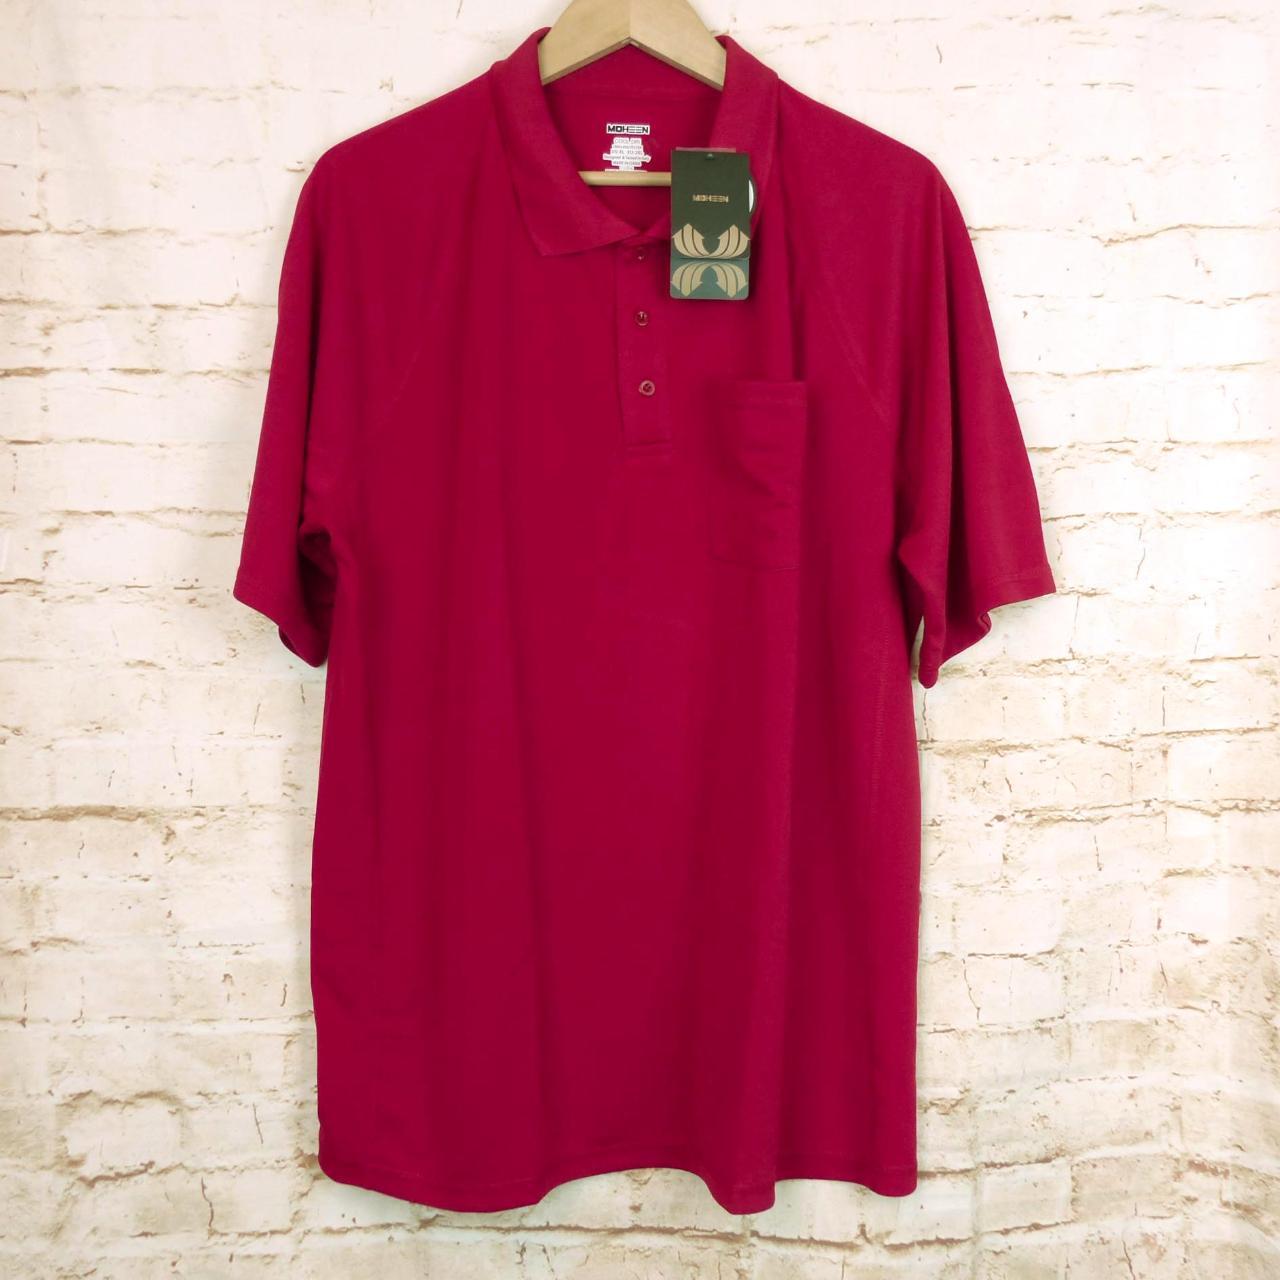 Moheen Polo Shirt Mens XL Red Cool Dri Short Sleeve... - Depop